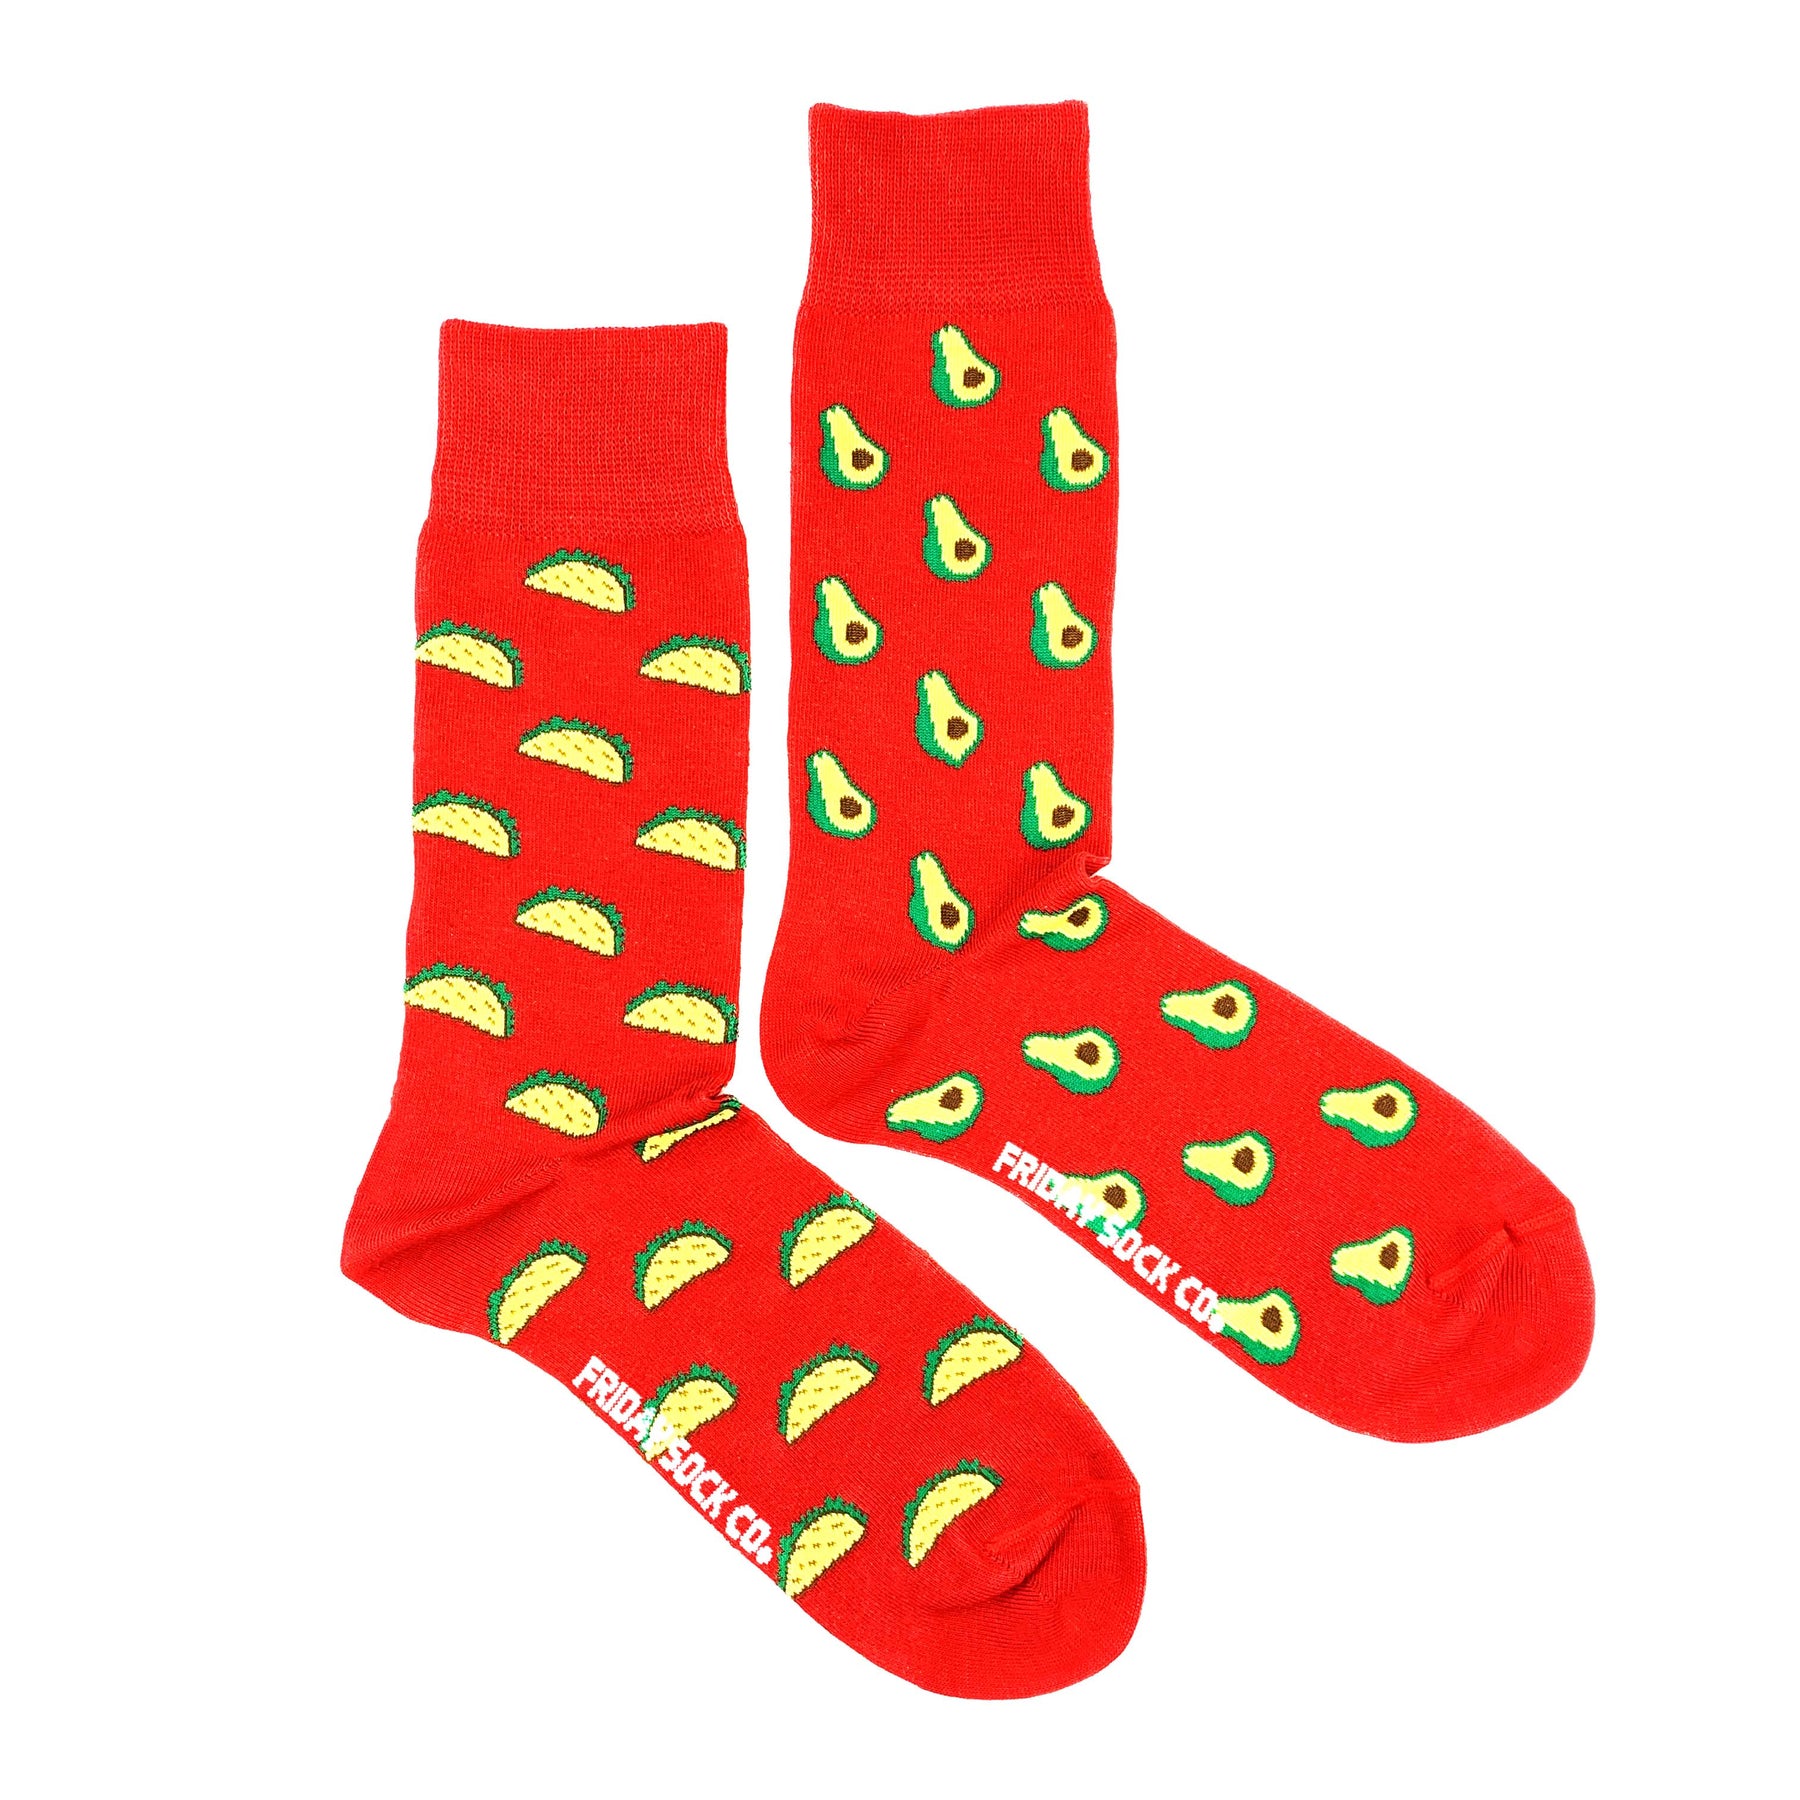 Friday Sock Co. - Men's Socks Taco & Avocado